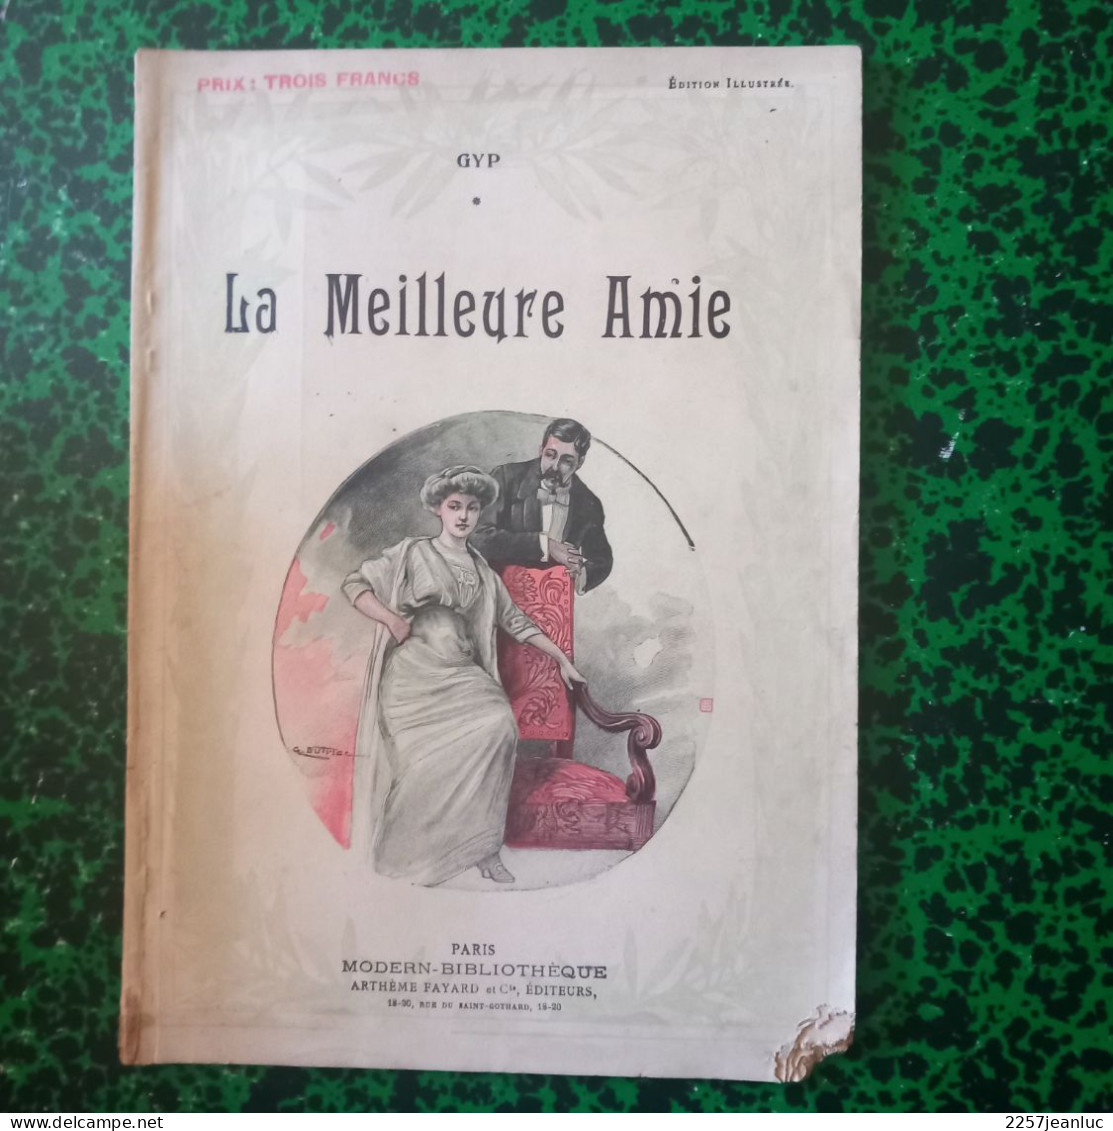 Edition Illustrée Gyp De 1913 * La Meilleure Amie - Romantici